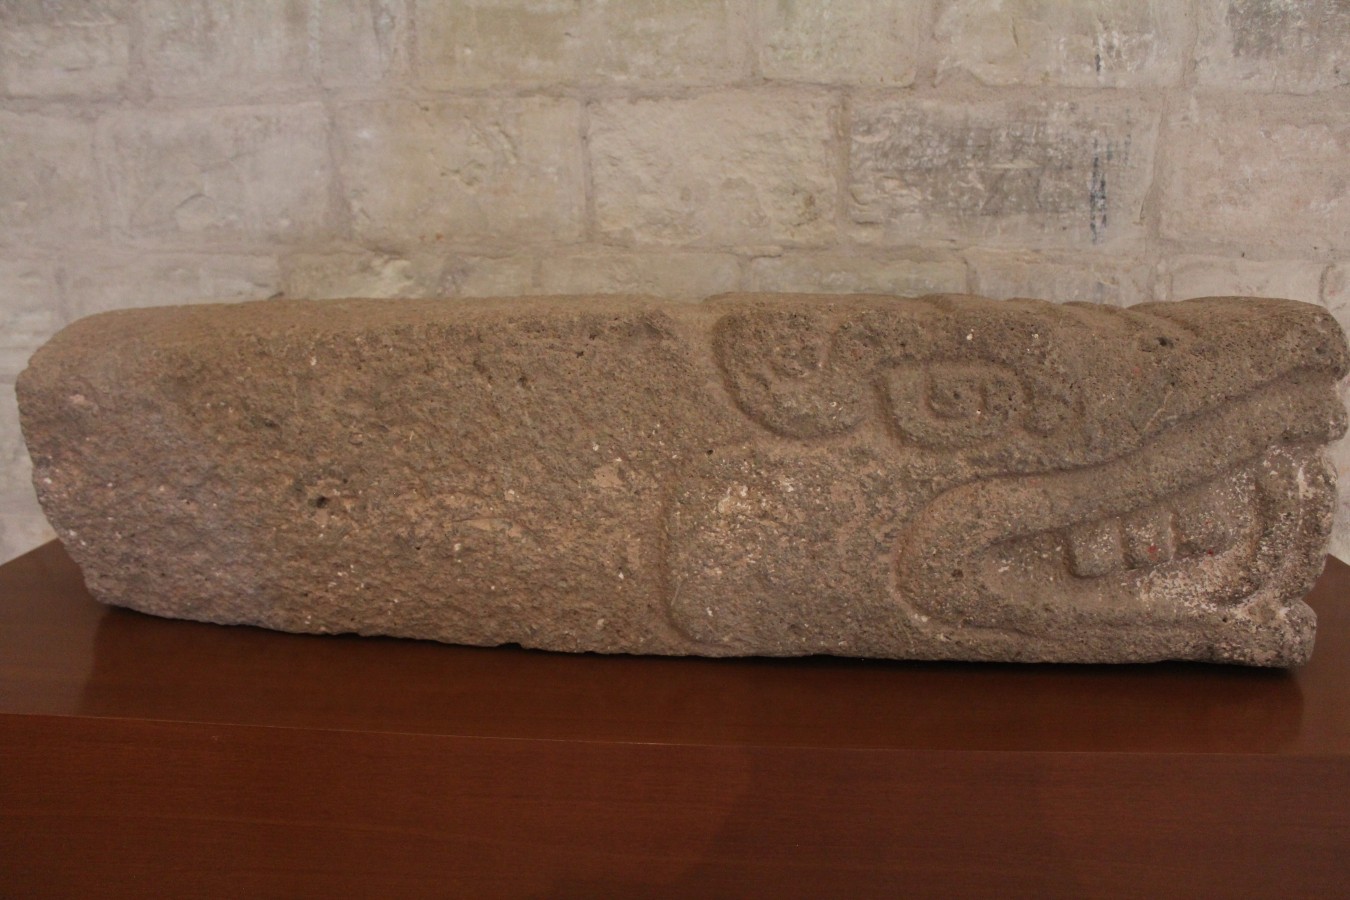 Representación de Quetzalcóatl (Serpiente emplumada)